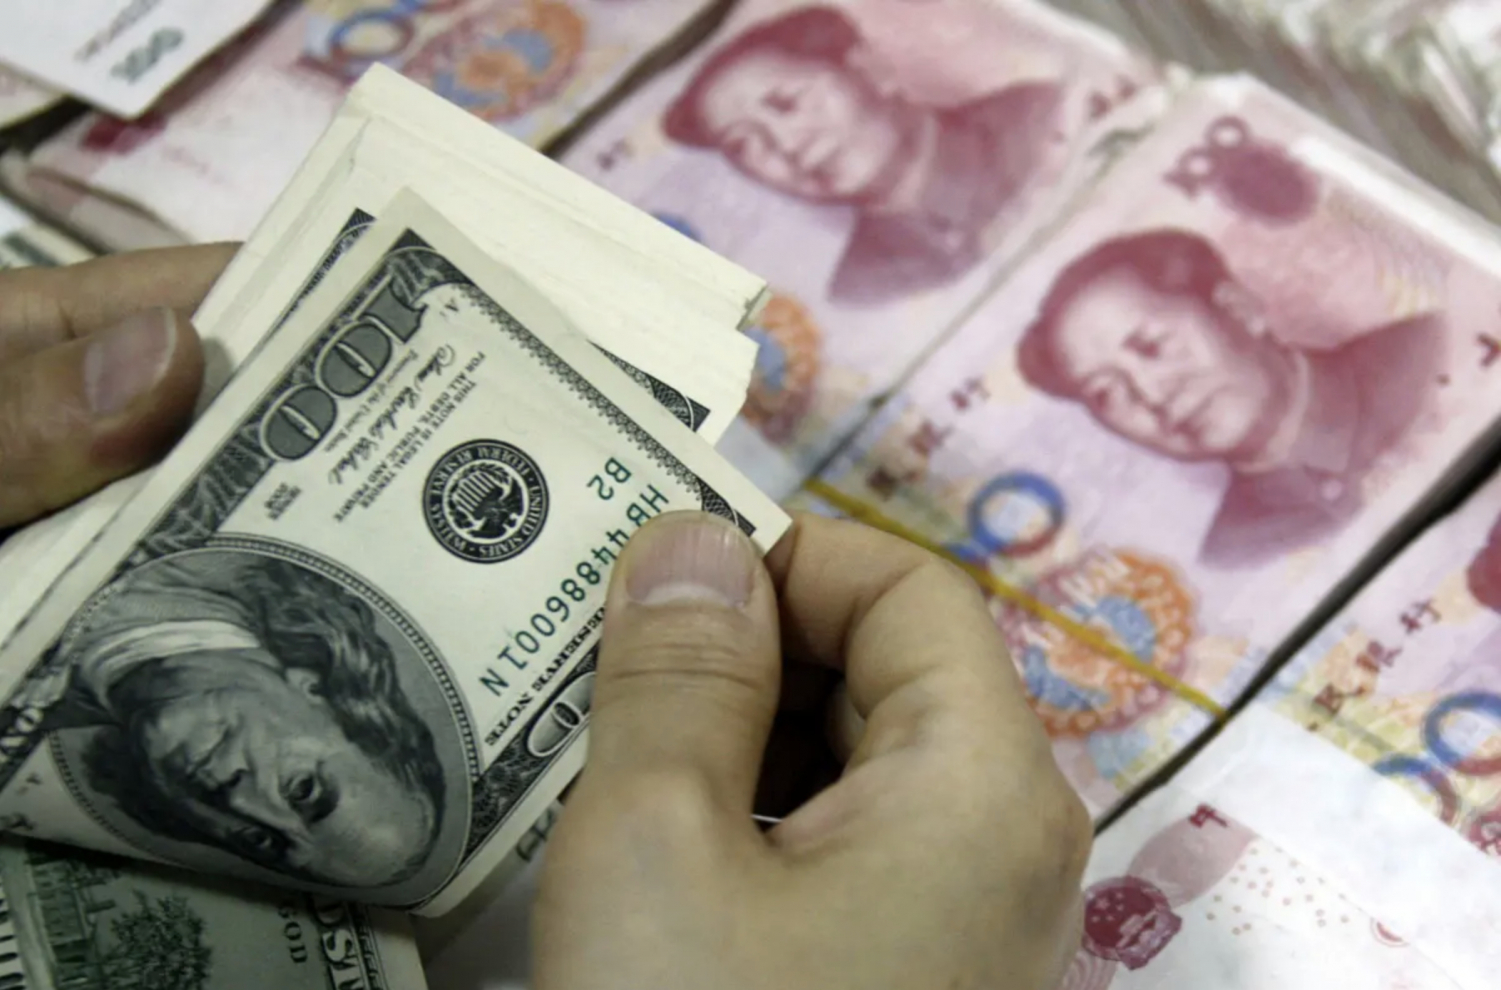 Trung Quốc bán tháo trái phiếu kho bạc Mỹ trong khi các nước khác tích cực mua vào